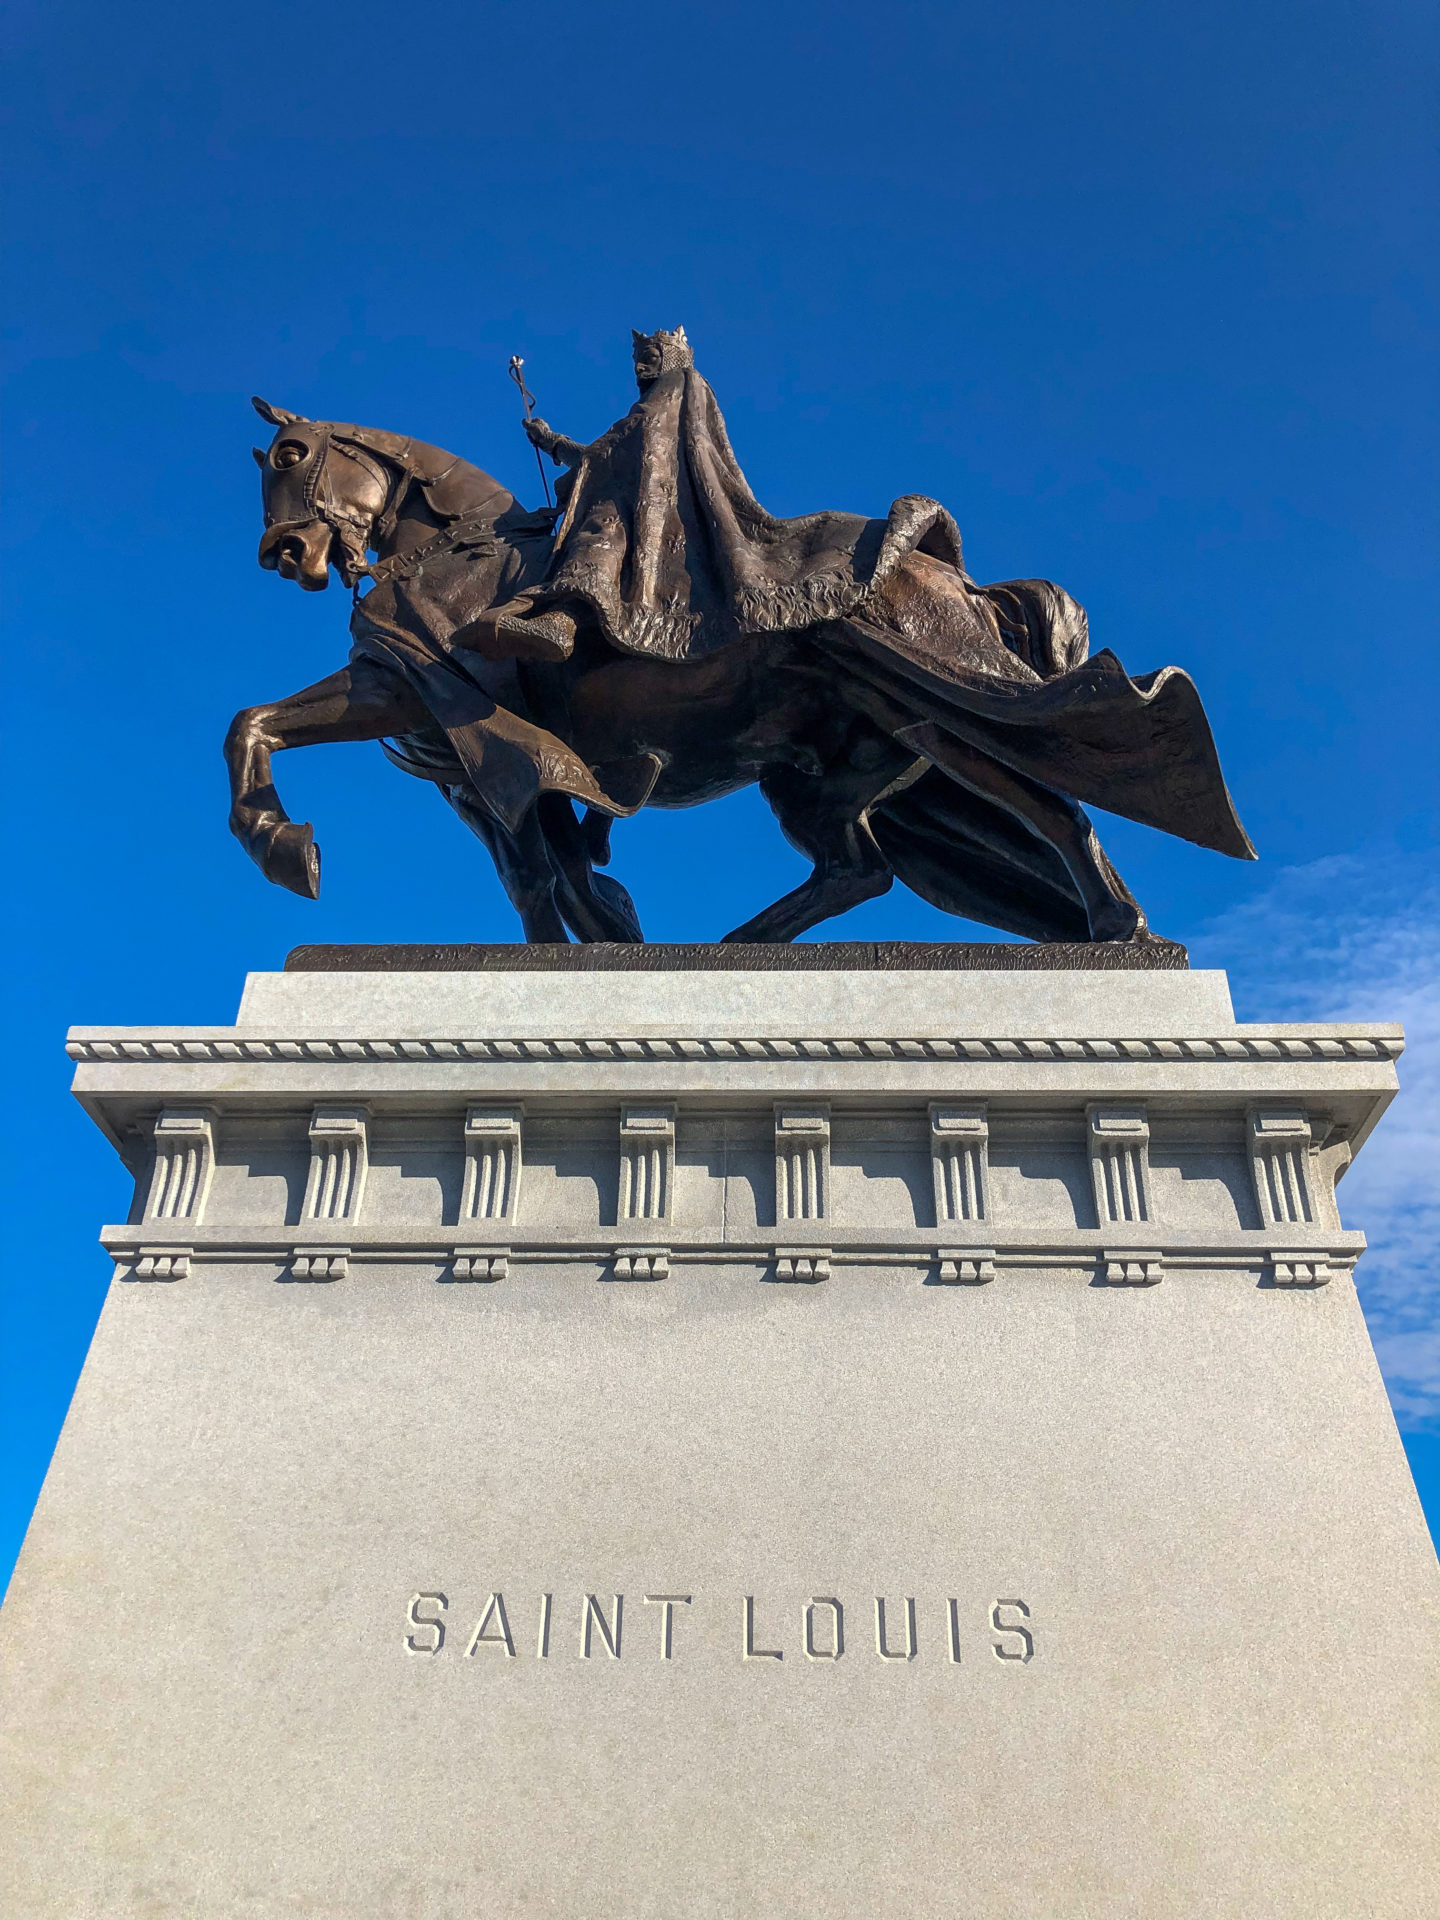 Reiterstandbild von König Louis in Saint Louis vor blauem Himmel